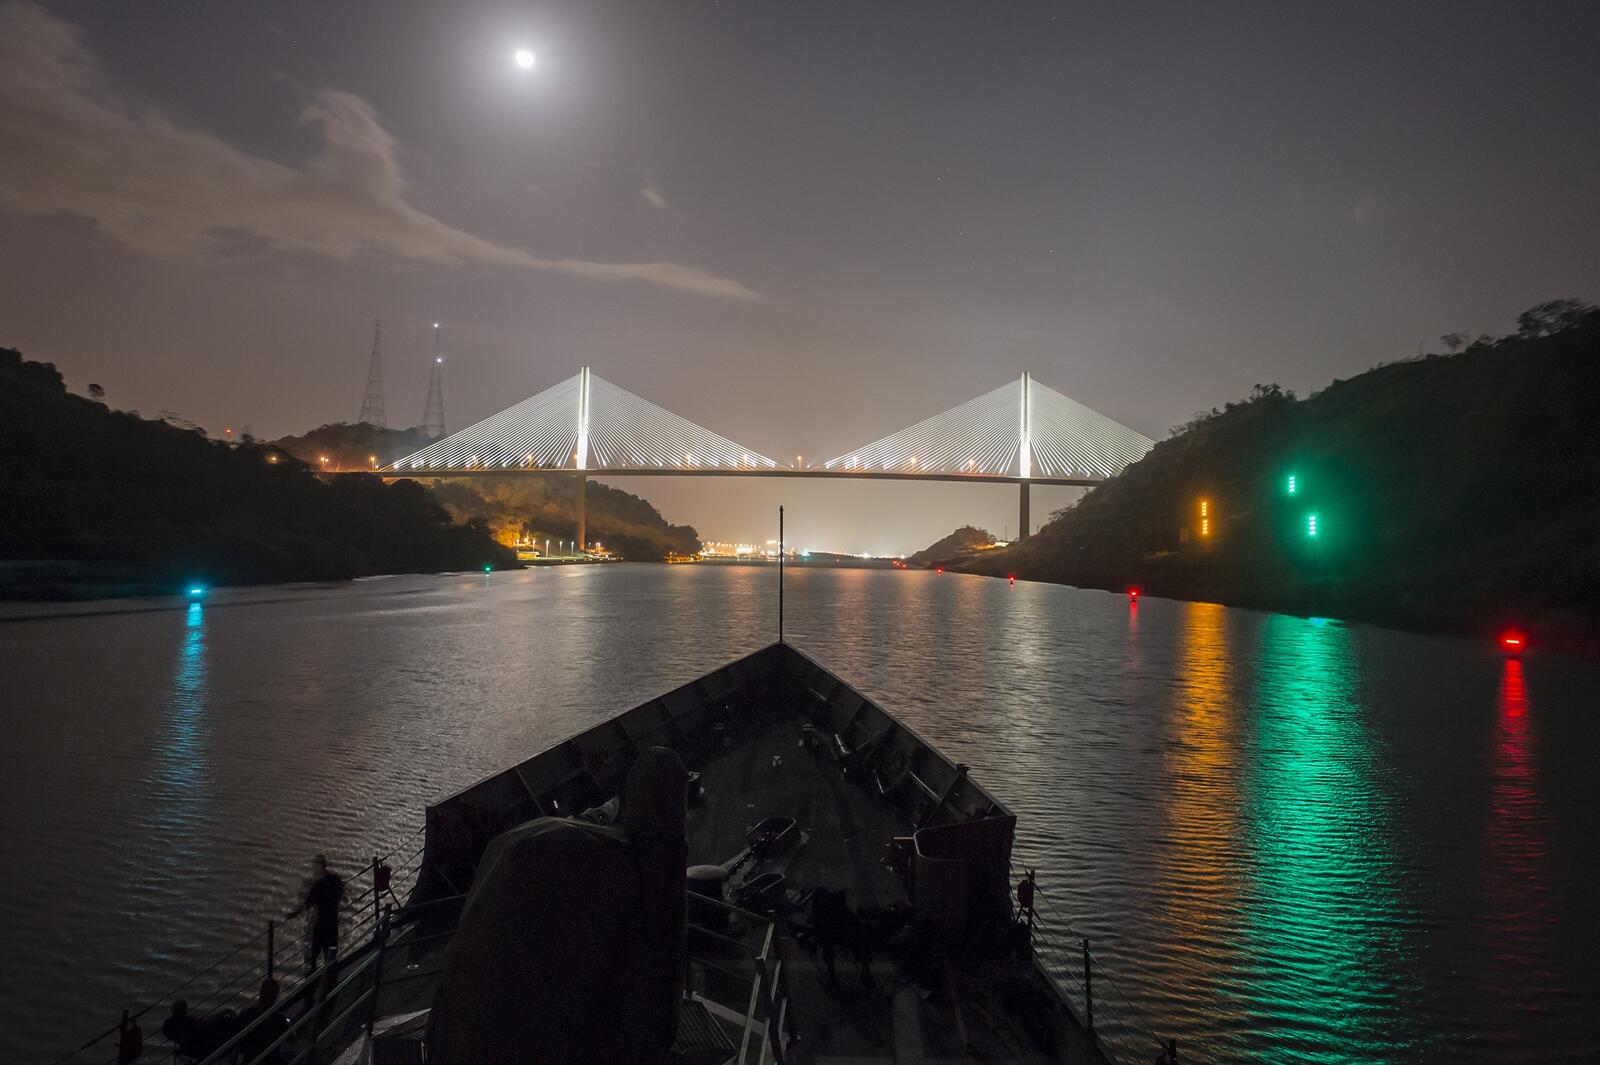 Бесплатное фото Большой мост через реку на фоне неба с луной